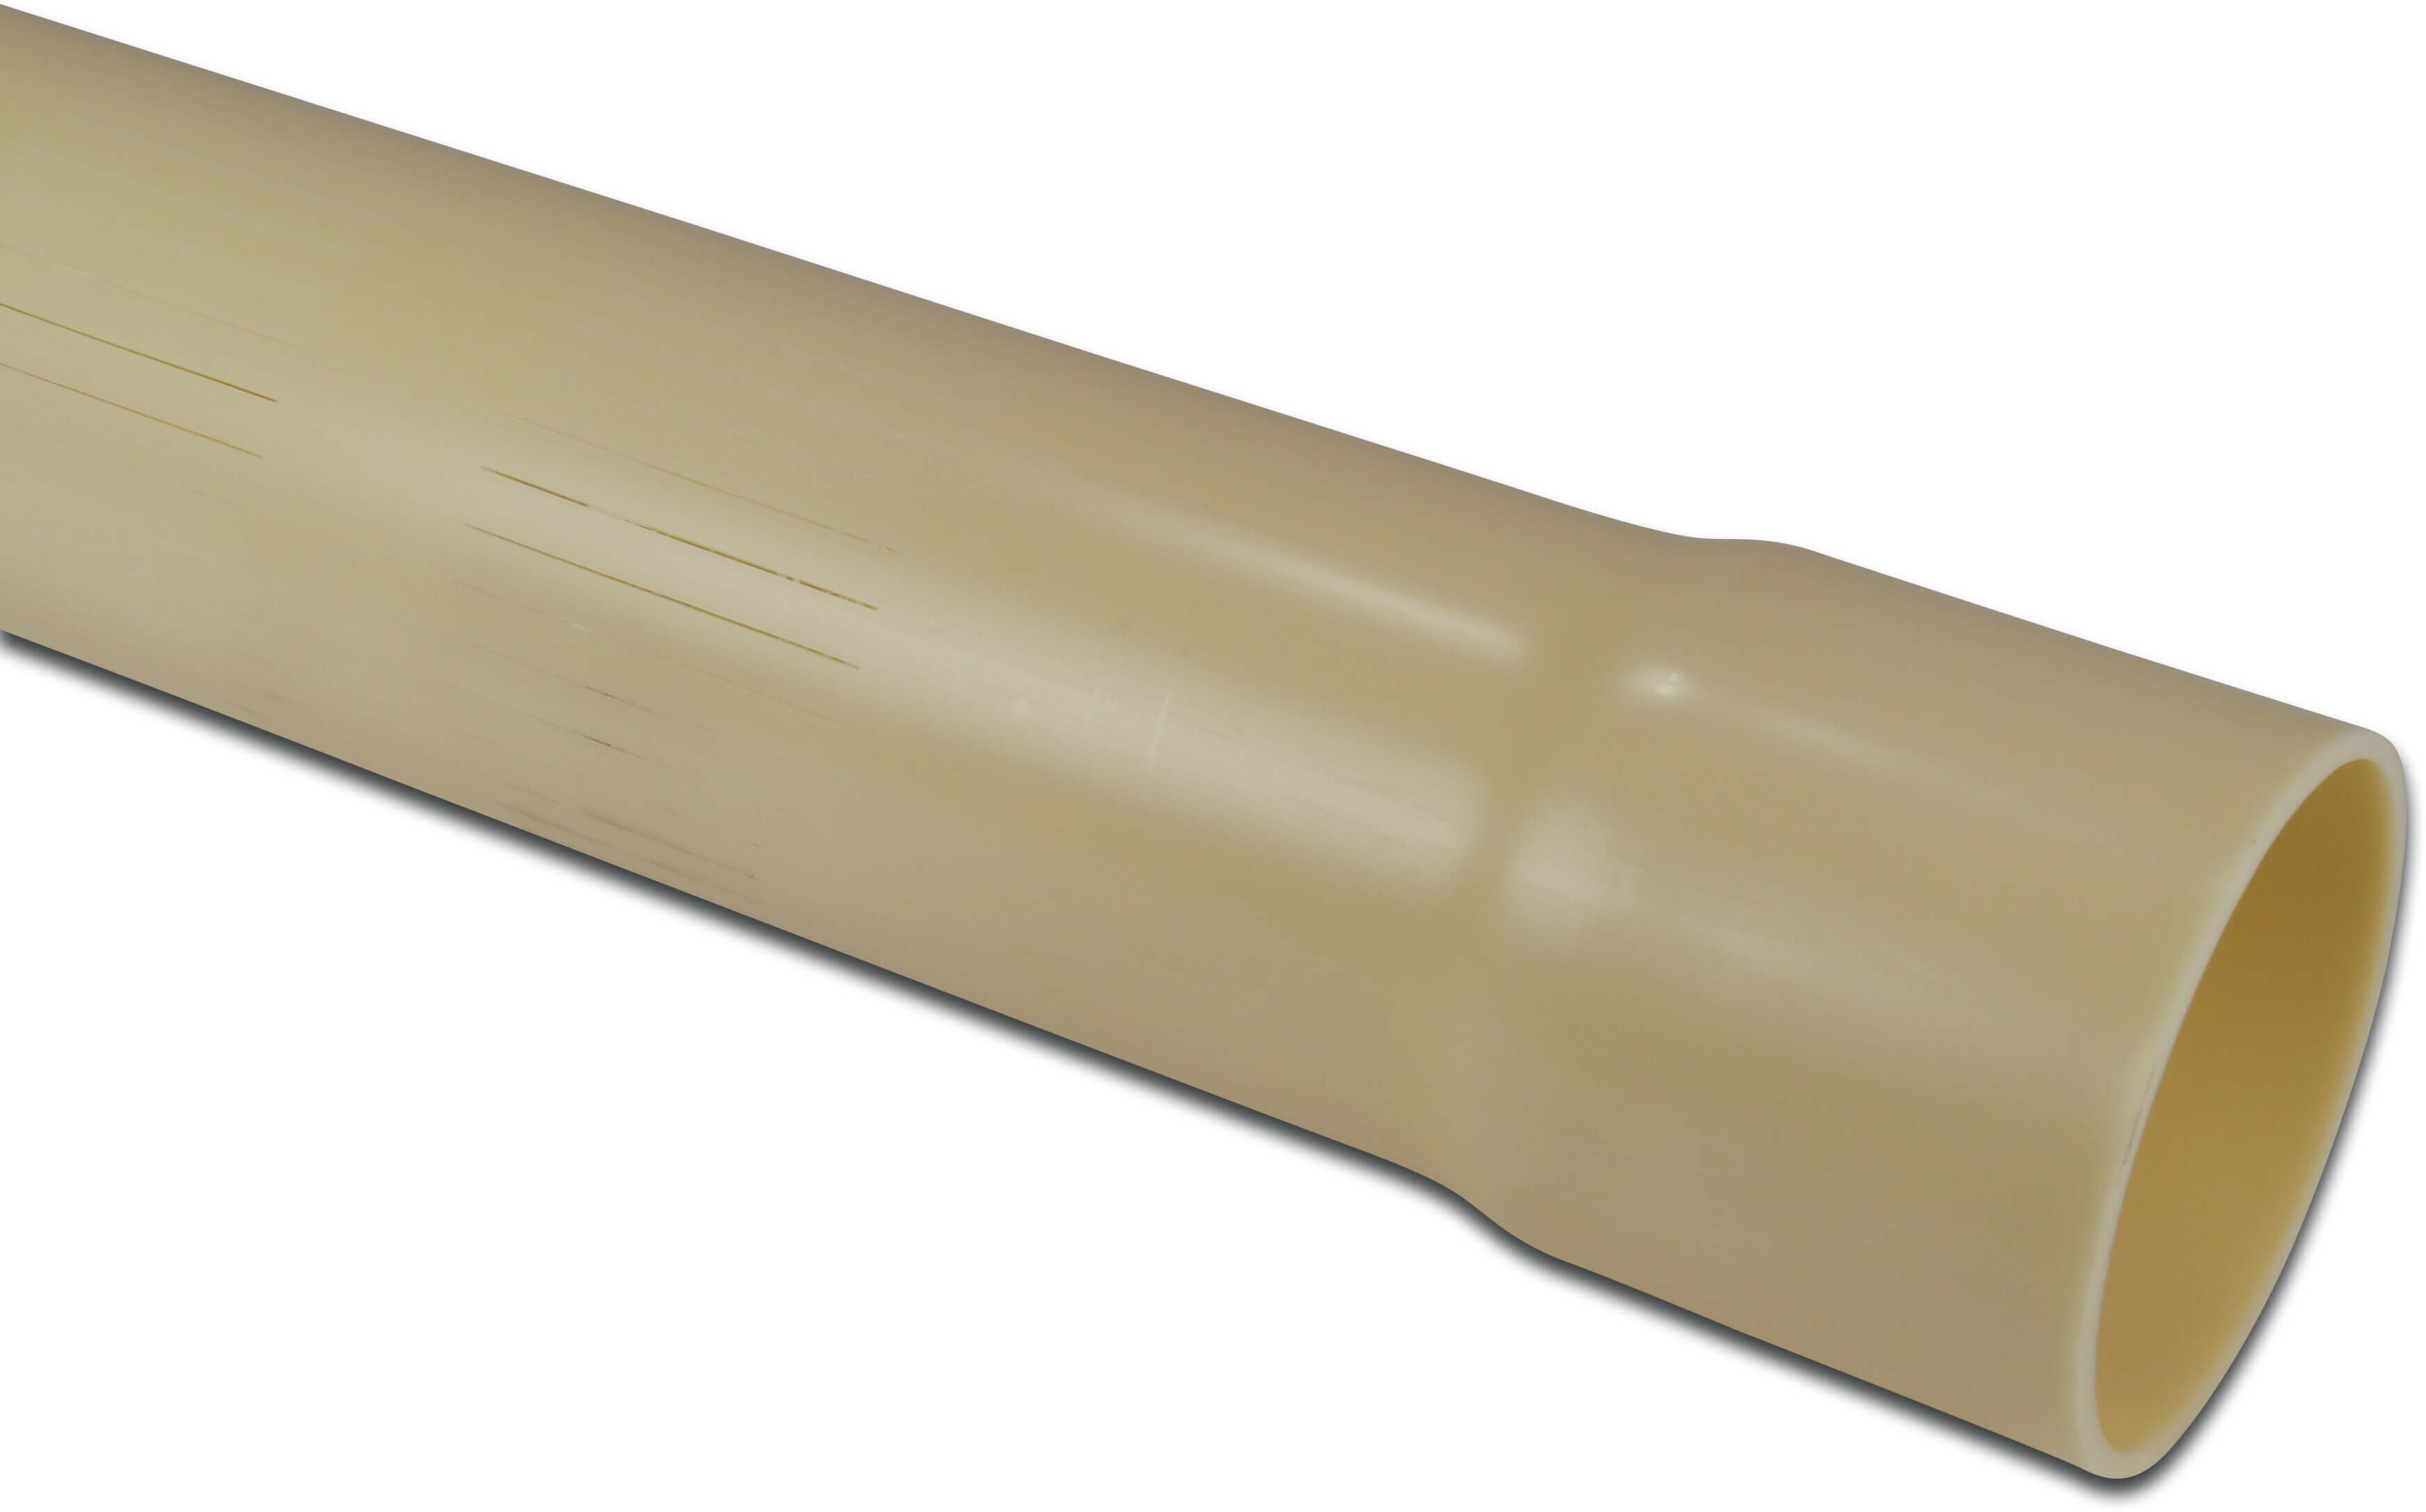 Rura szczelinowa PVC-U 125 mm x 6 mm KW x gładkie 12,5bar 5m 0,5 mm kremowy 5m